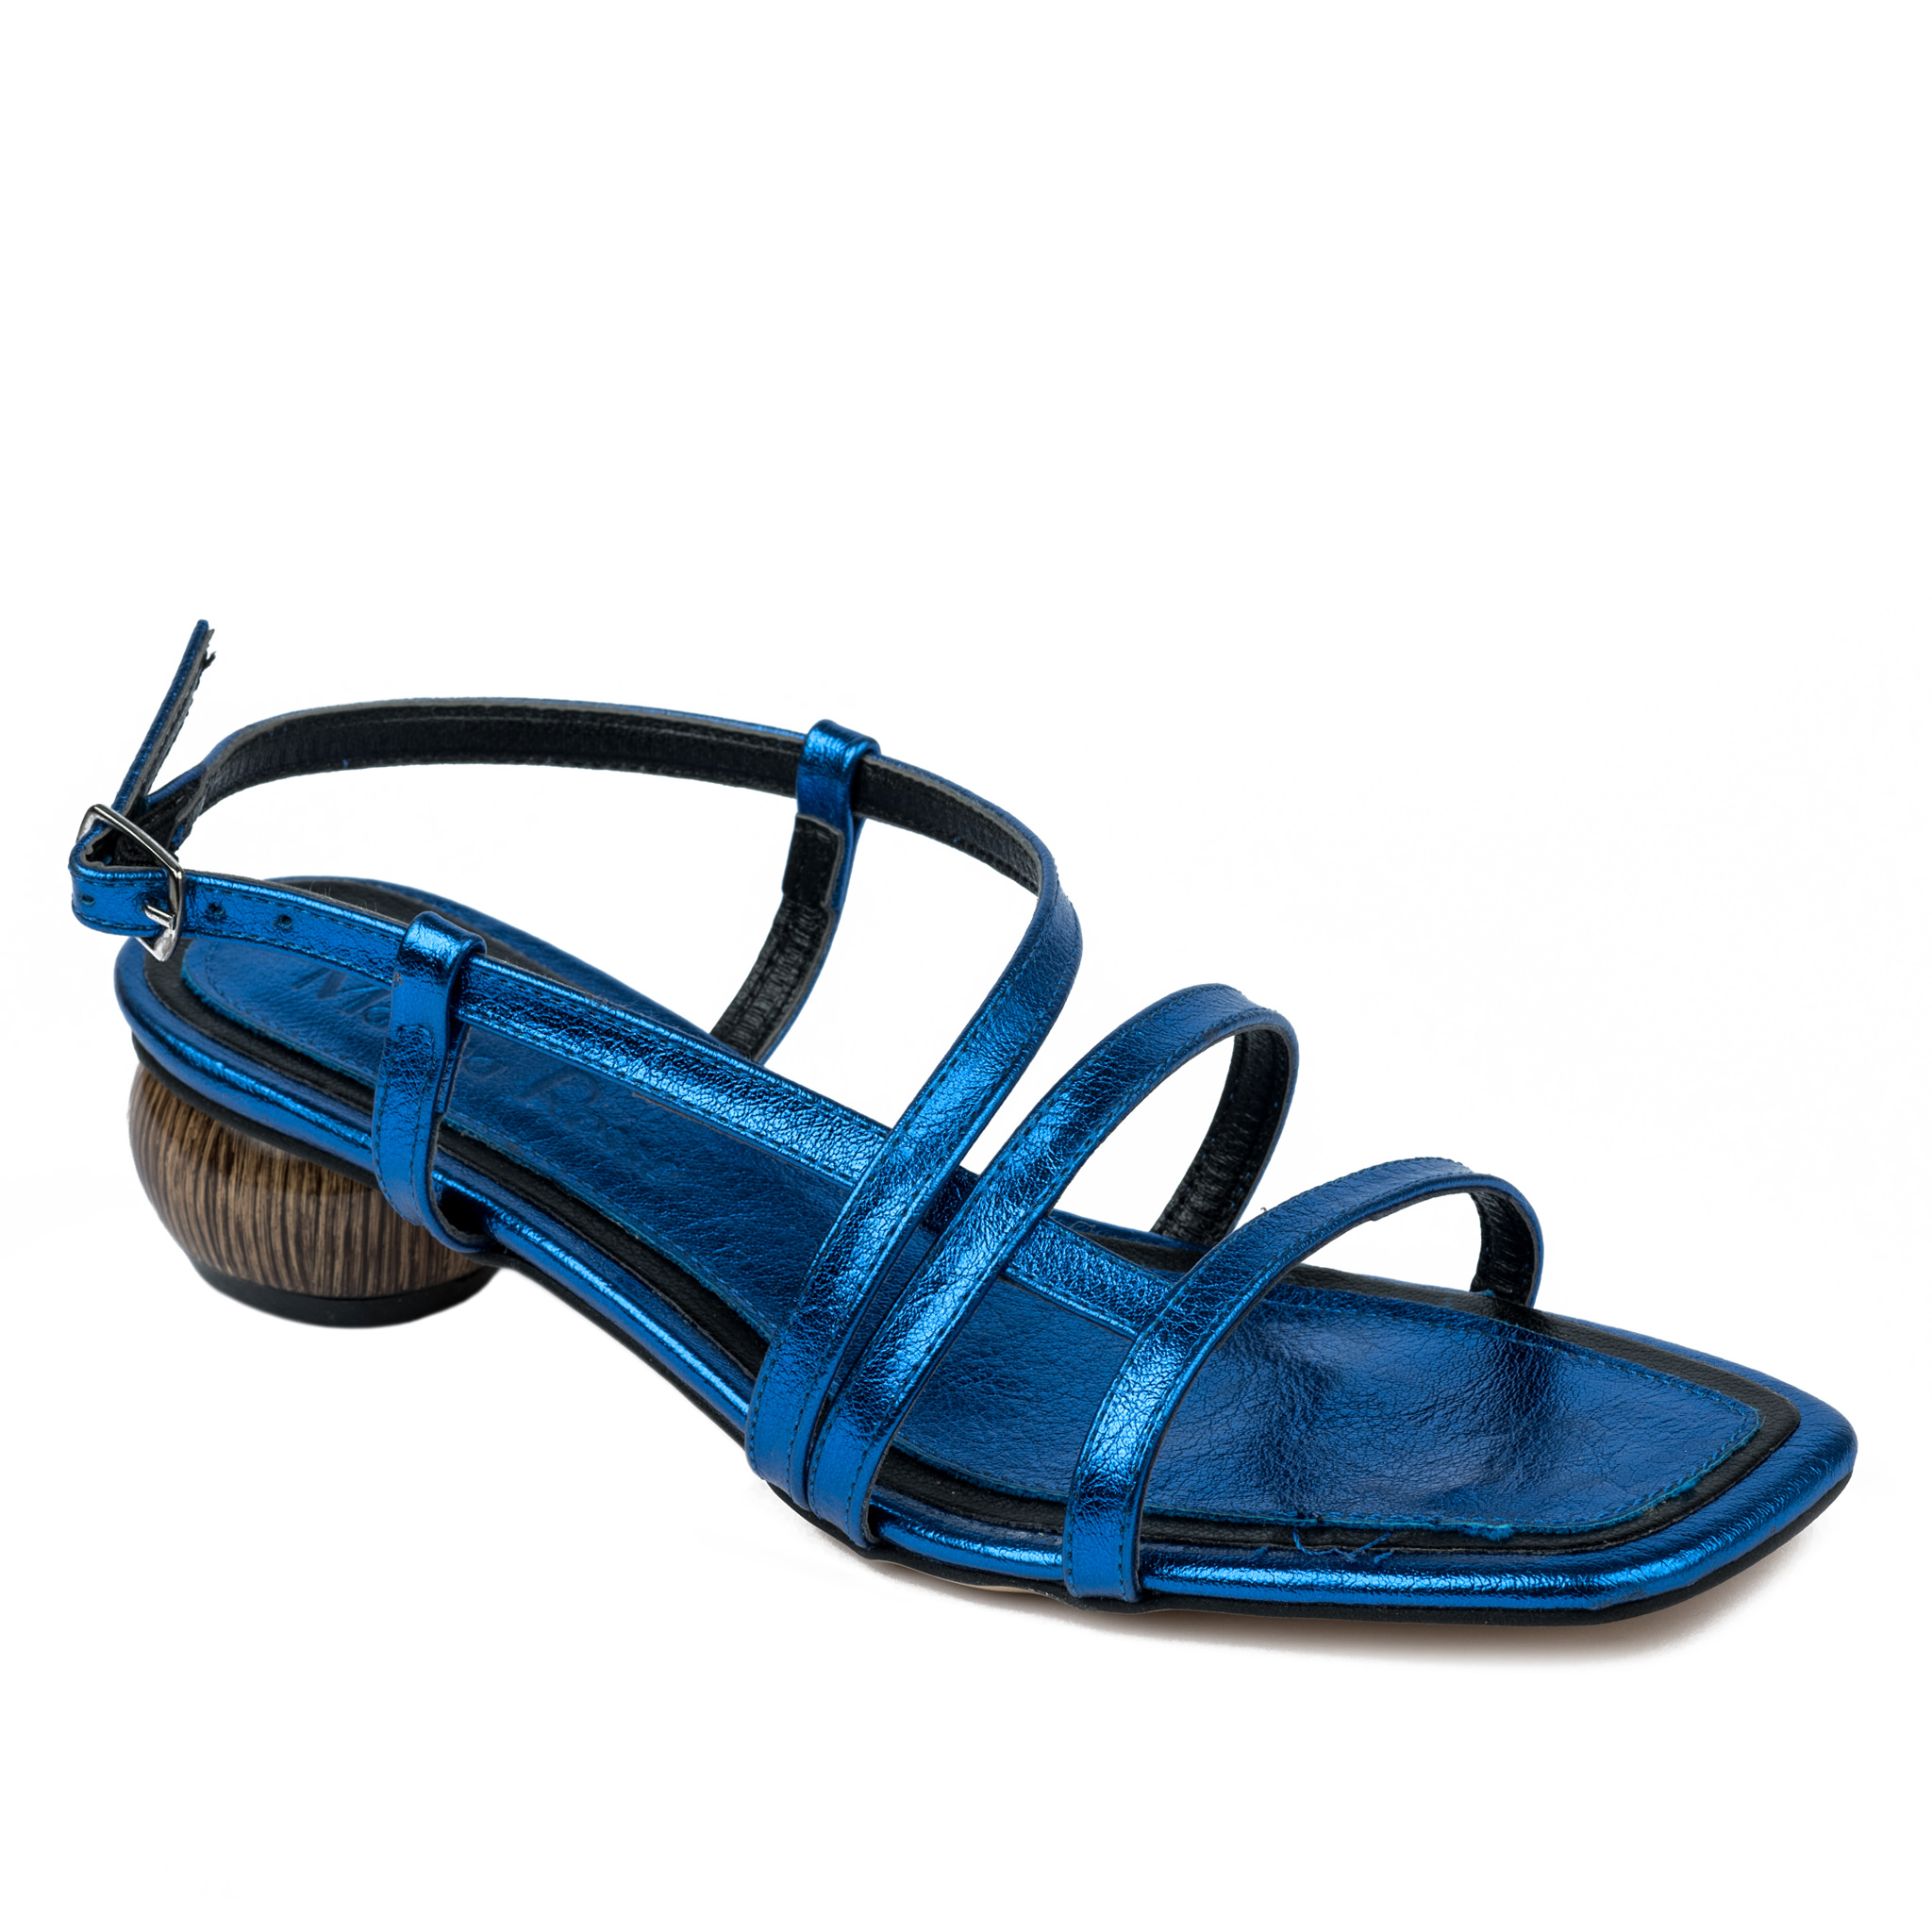 Women sandals A612 - BLUE